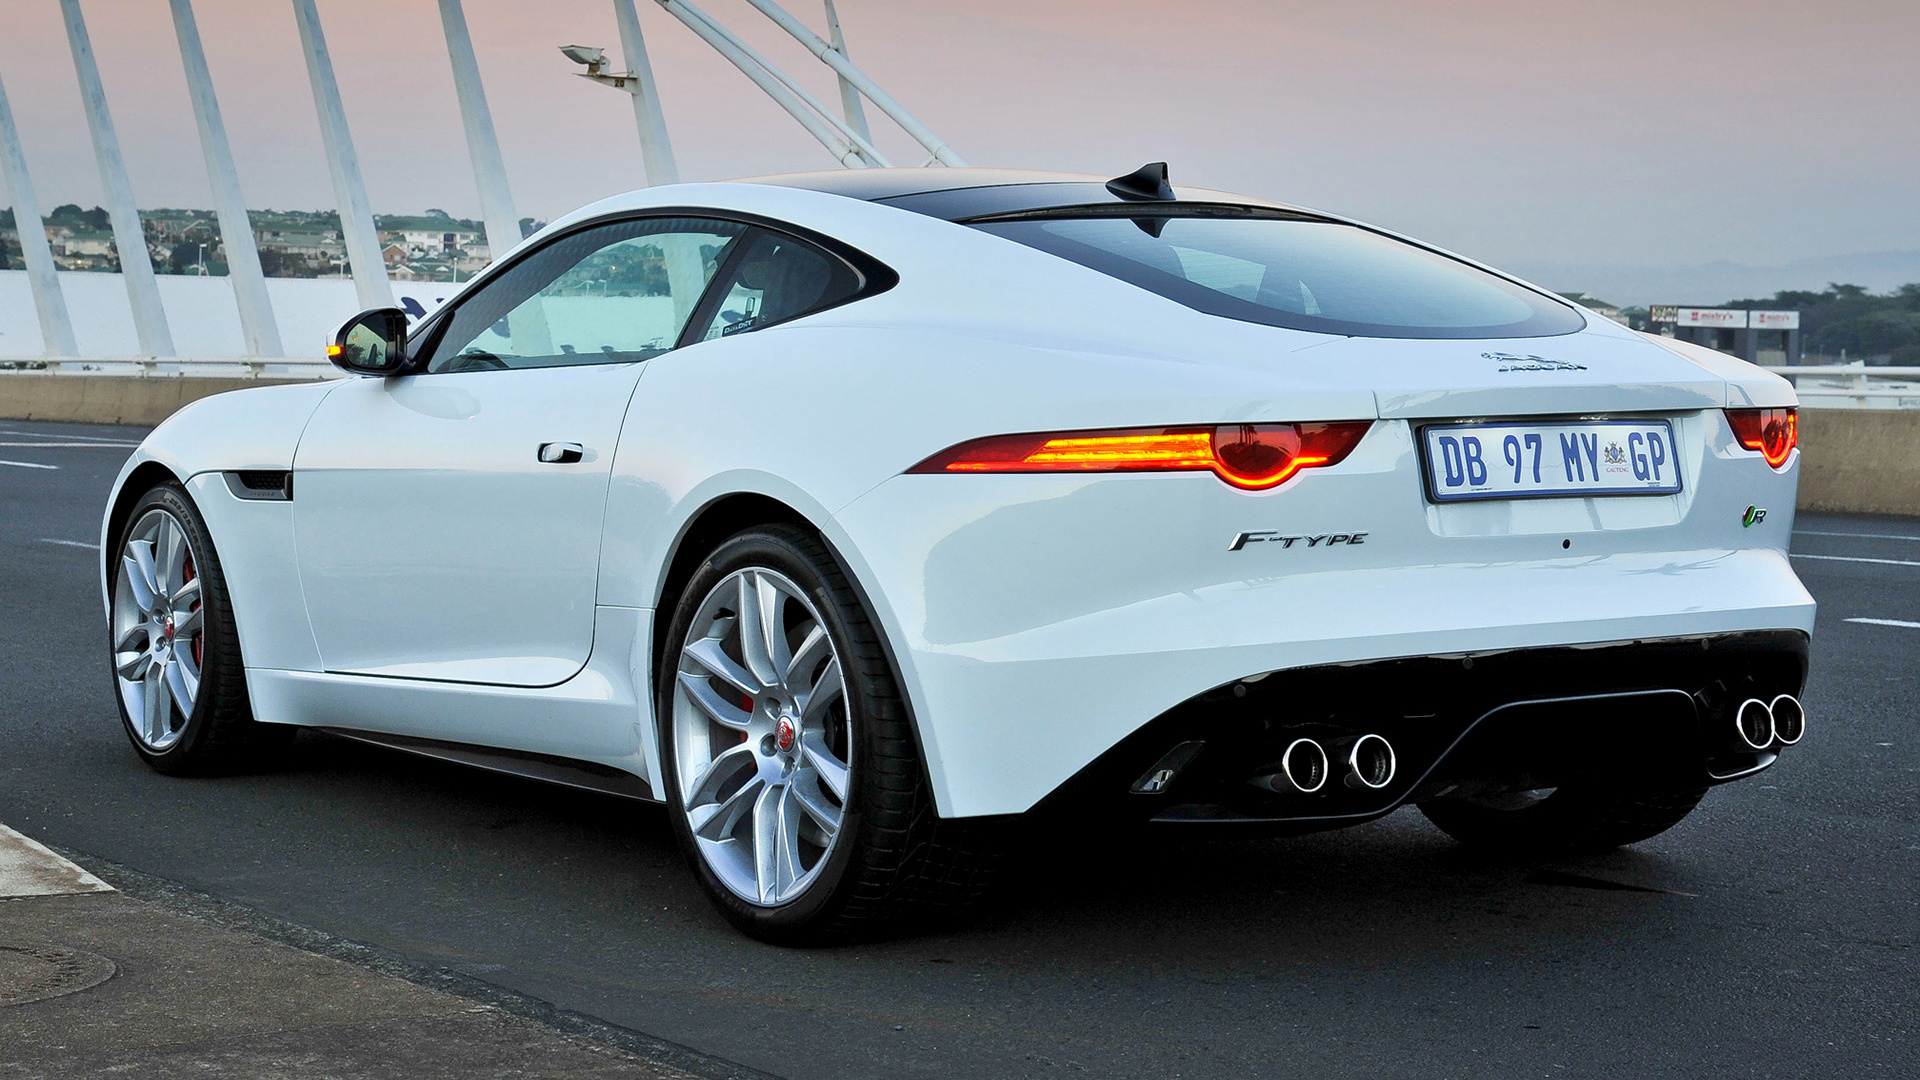 Download mobile wallpaper Jaguar, Car, Vehicles, Grand Tourer, Coupé, White Car, Jaguar F Type R Coupe for free.